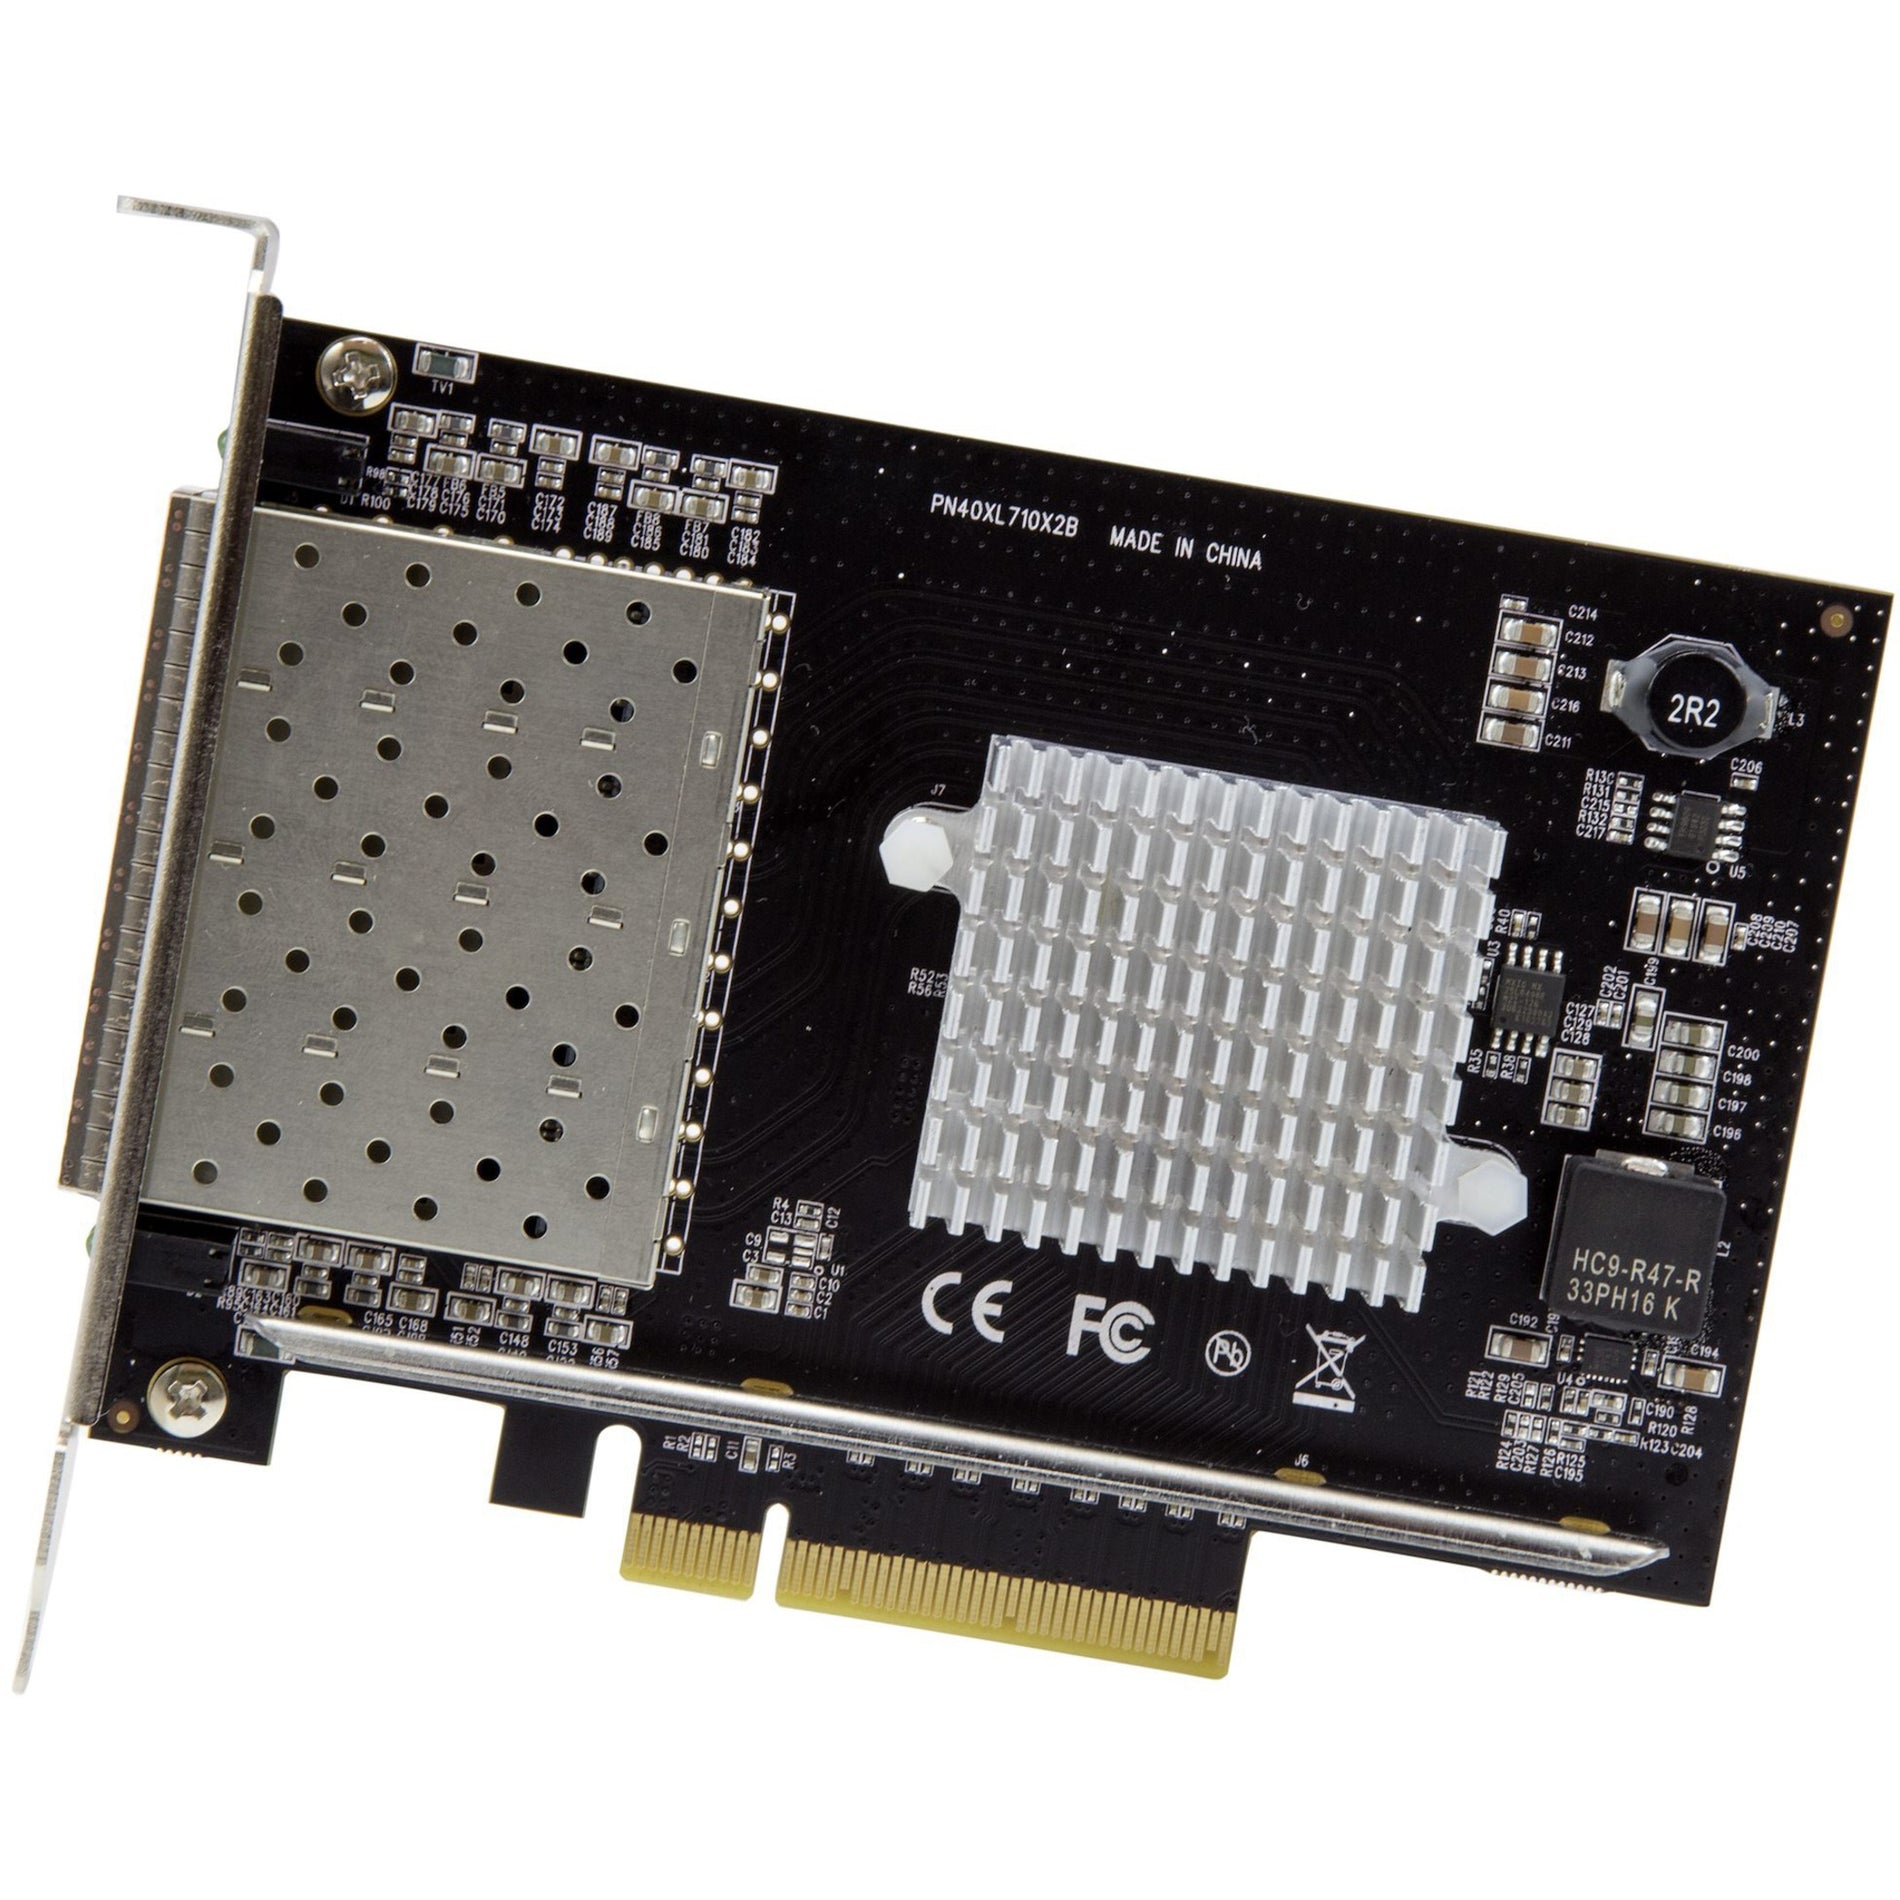 StarTech.com PEX10GSFP4I Quad-Port SFP+ Server Network Card - Intel XL710 Chip, 10Gigabit Ethernet Card